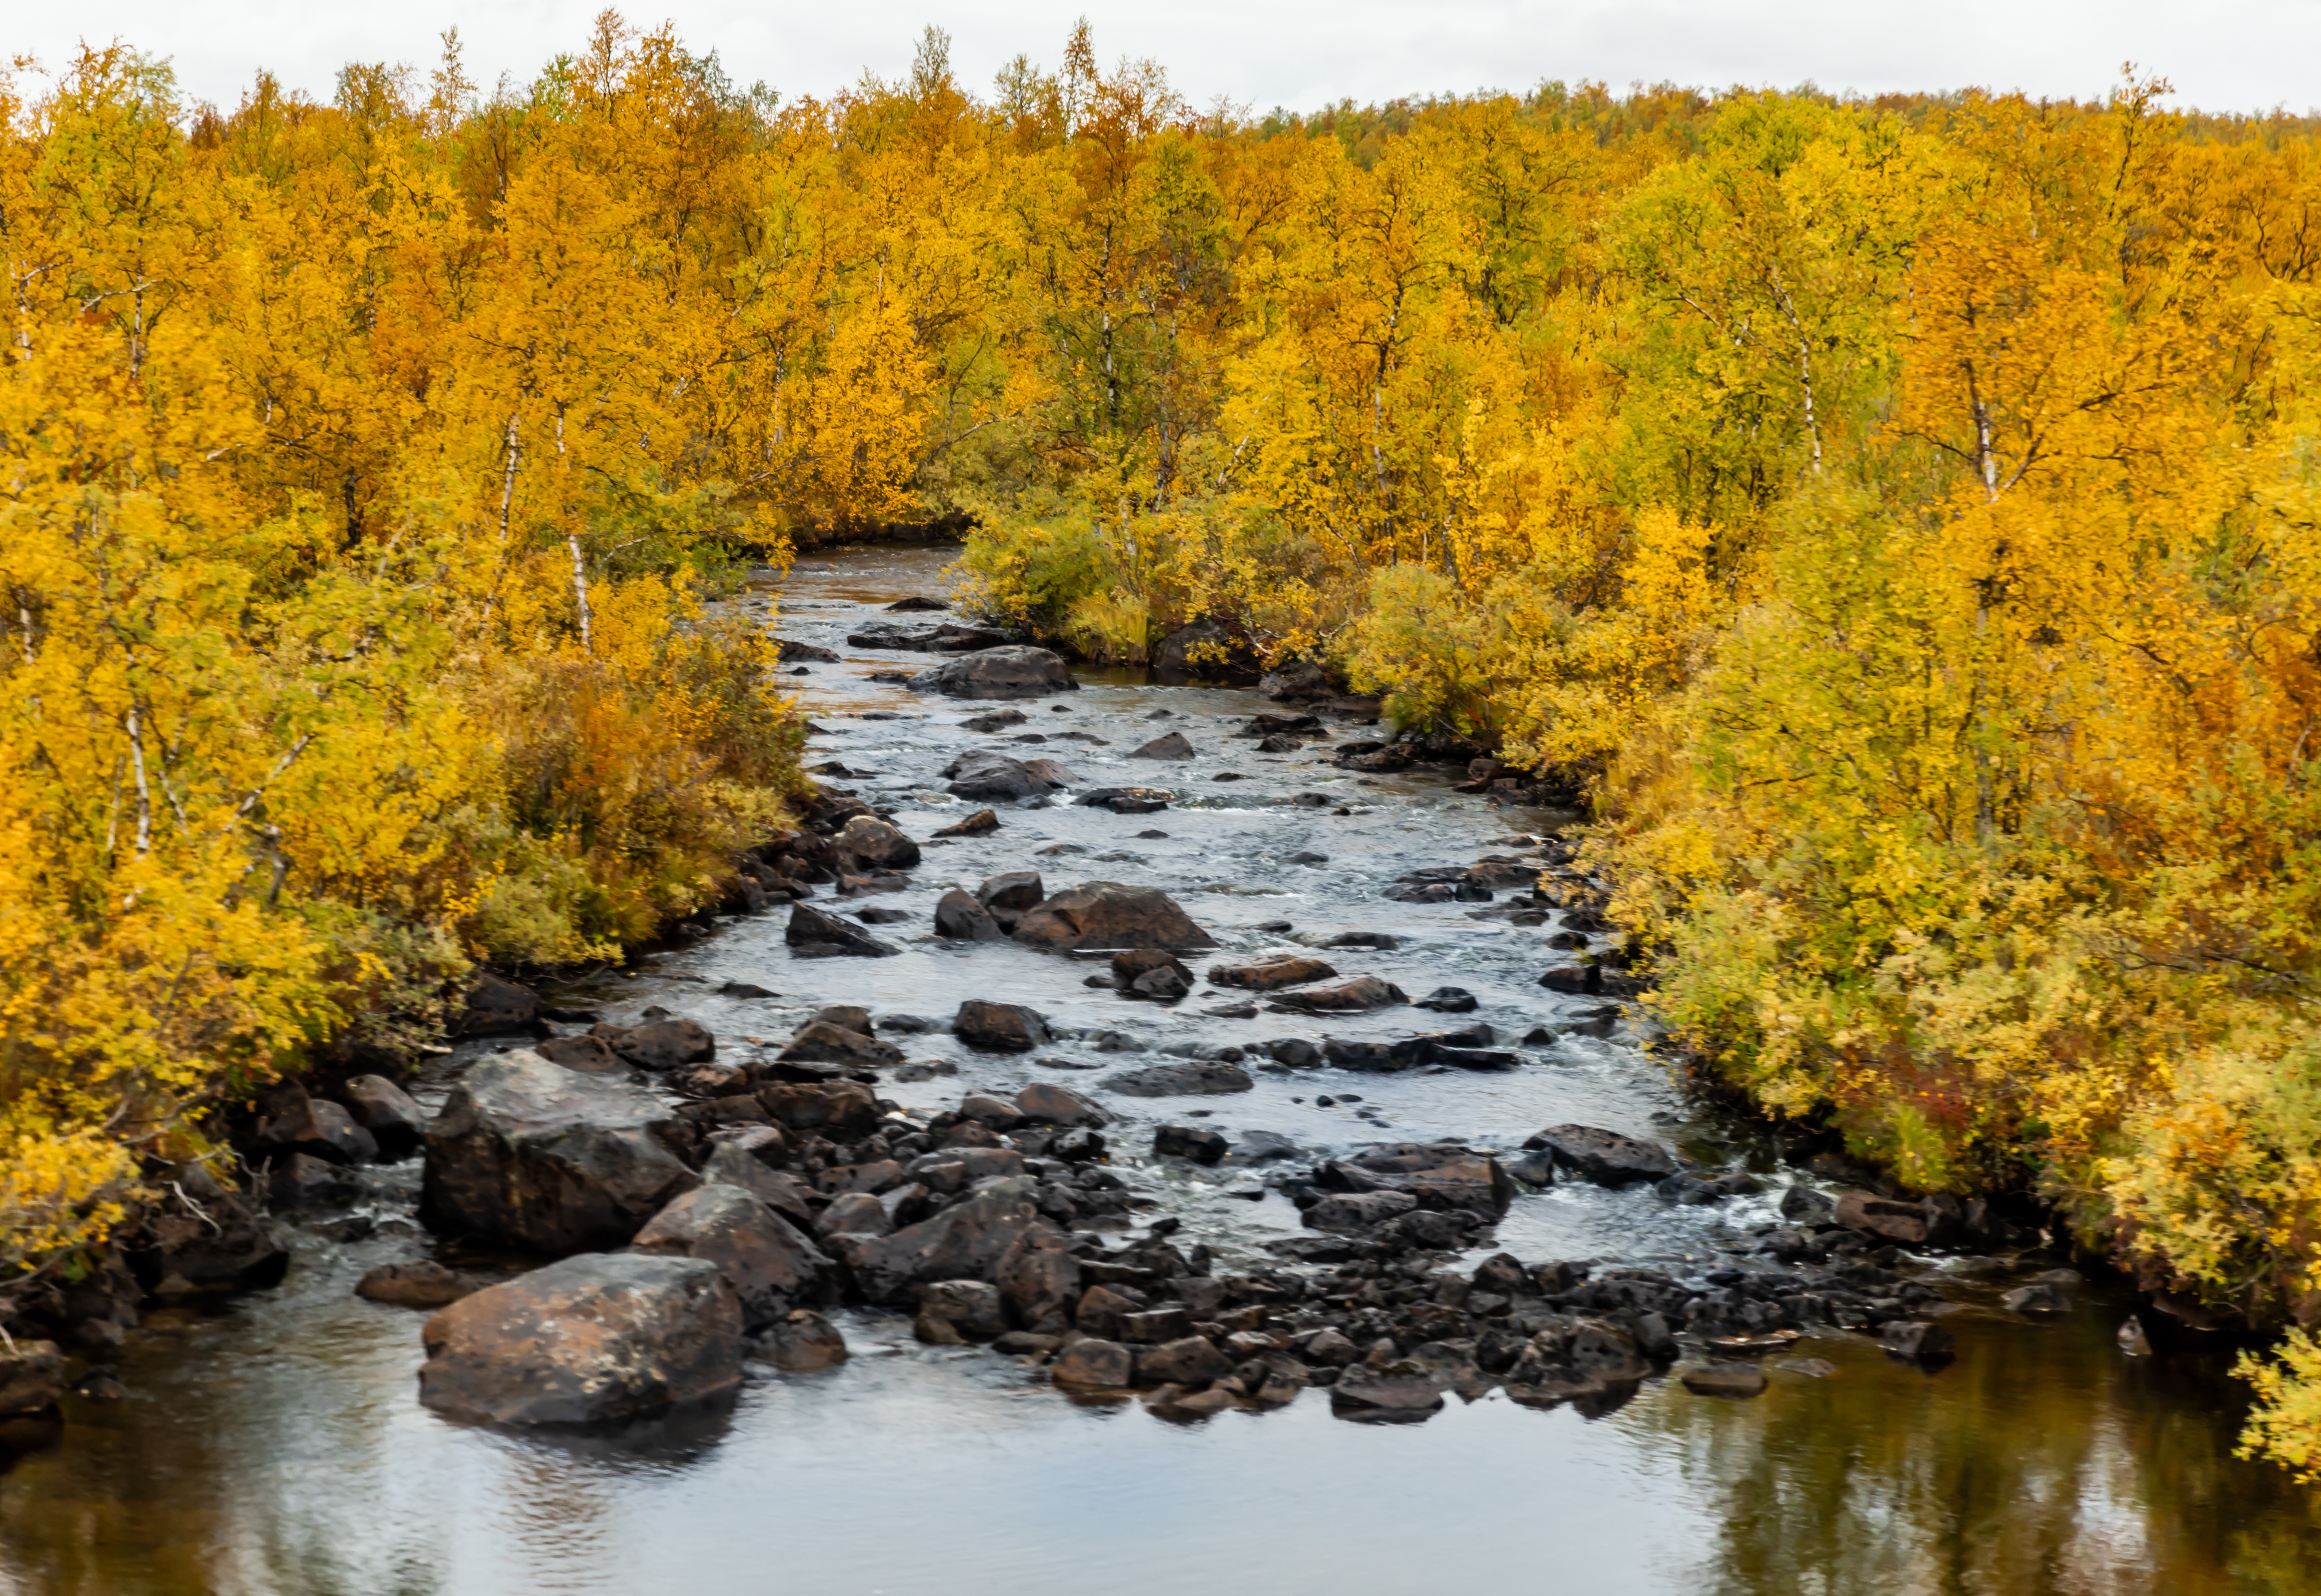 River Stones Trees Autumn Landscape Nature